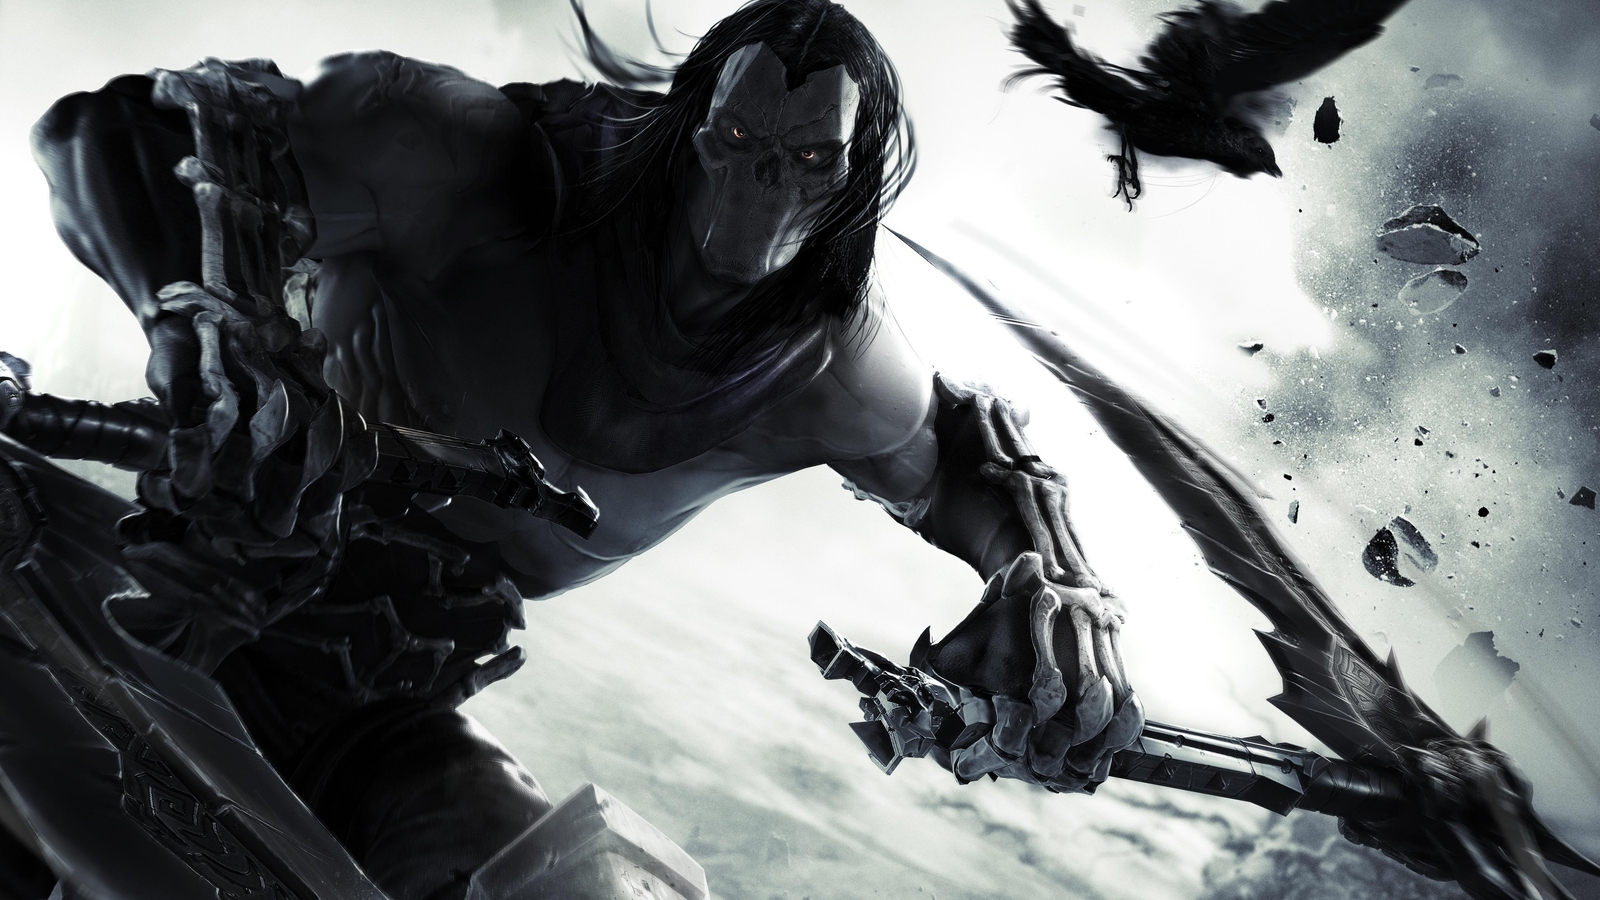 Image: Rider, Death, bird, crow, mask, sight, bones, kick, spit, game, Darksiders 2